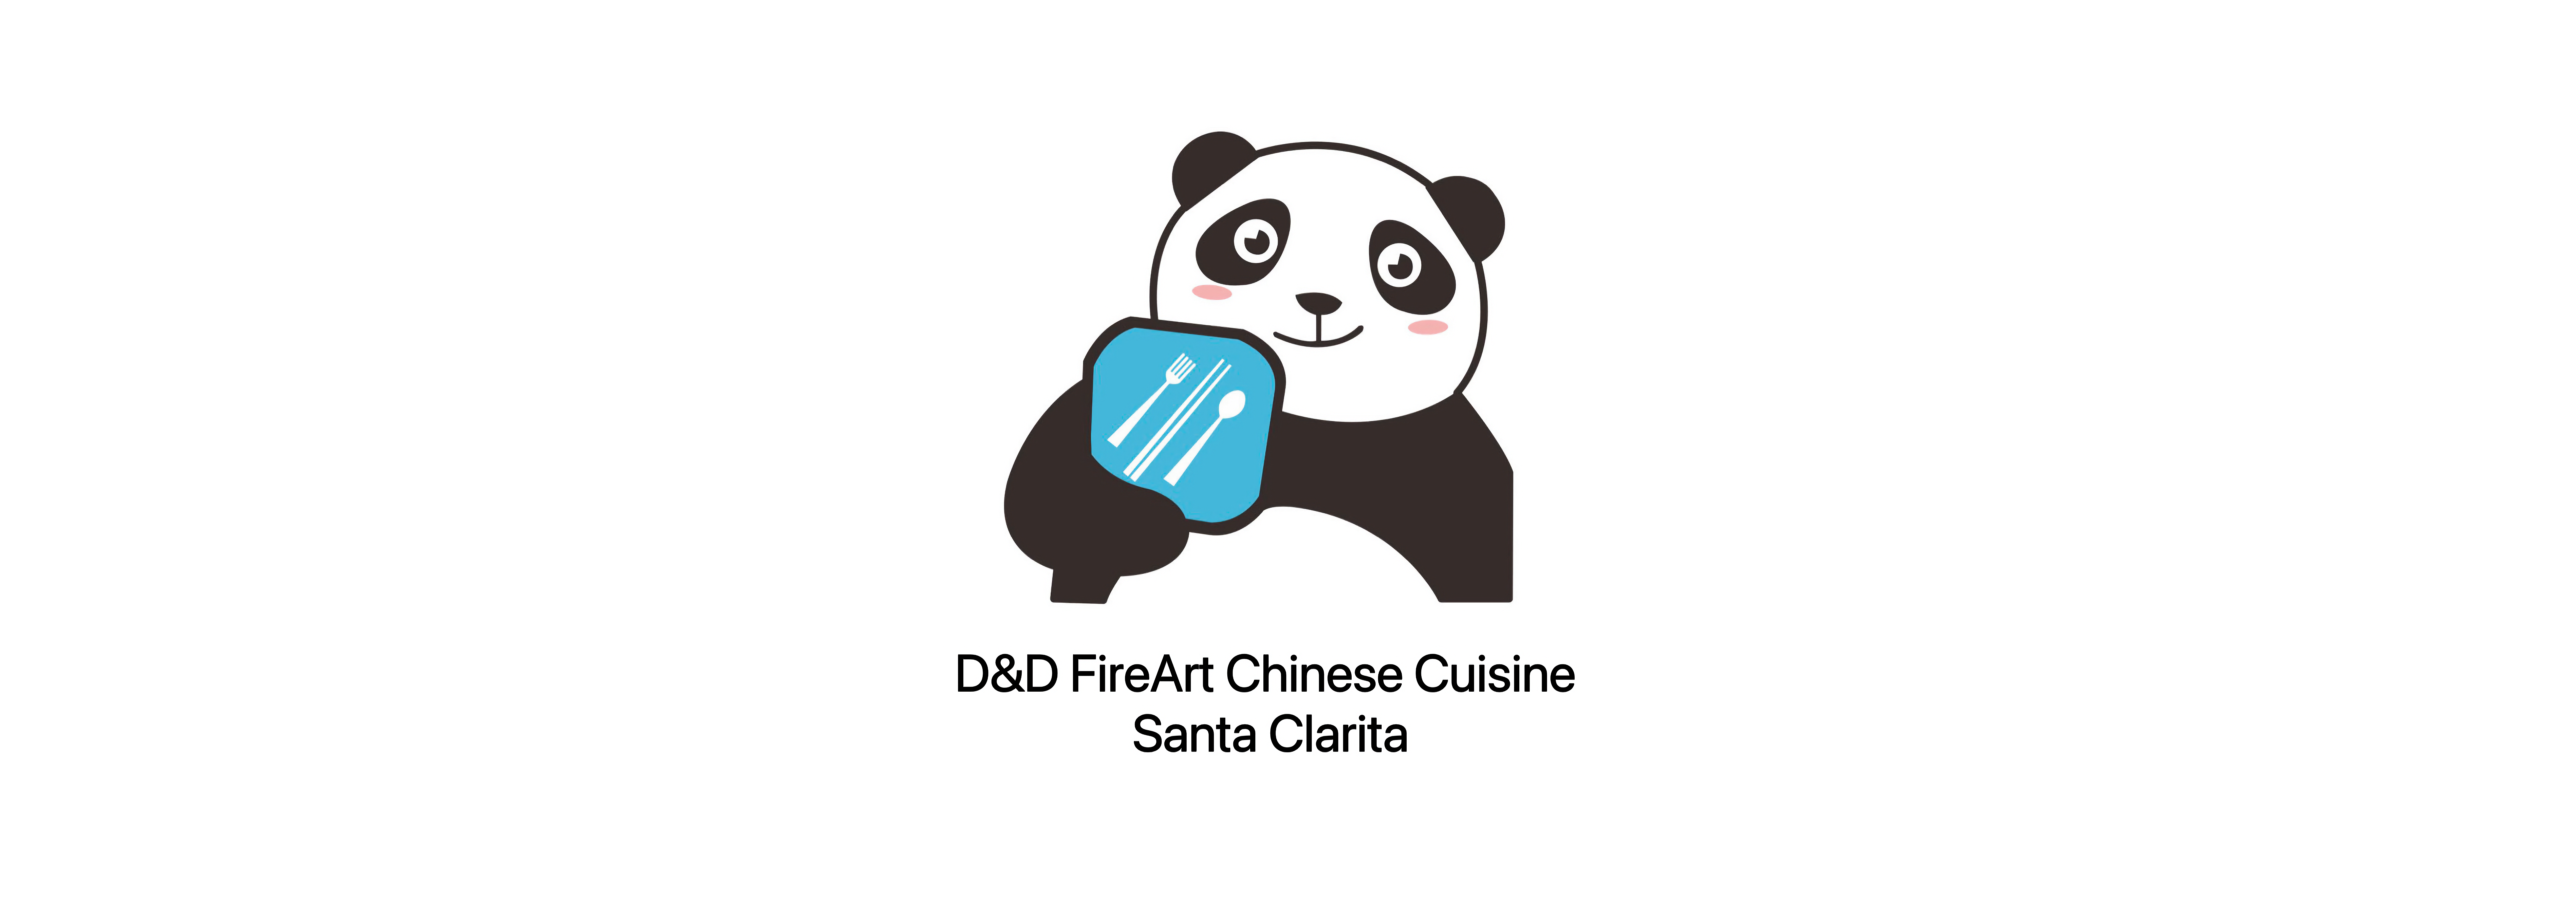 D&D FireArt Chinese Cuisine